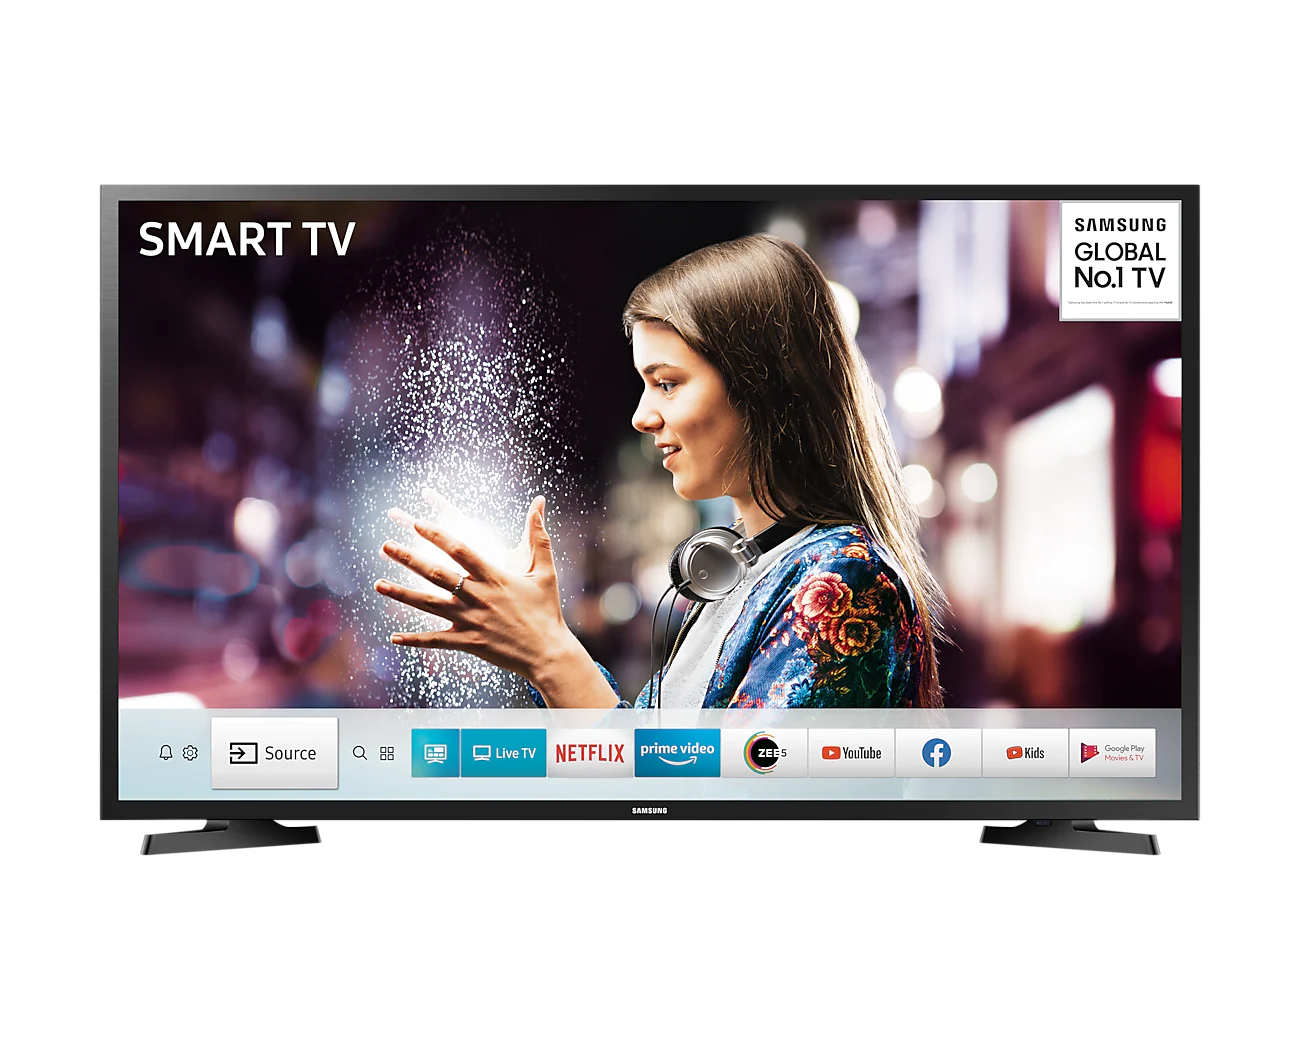 Samsung SMART TV LED 43"